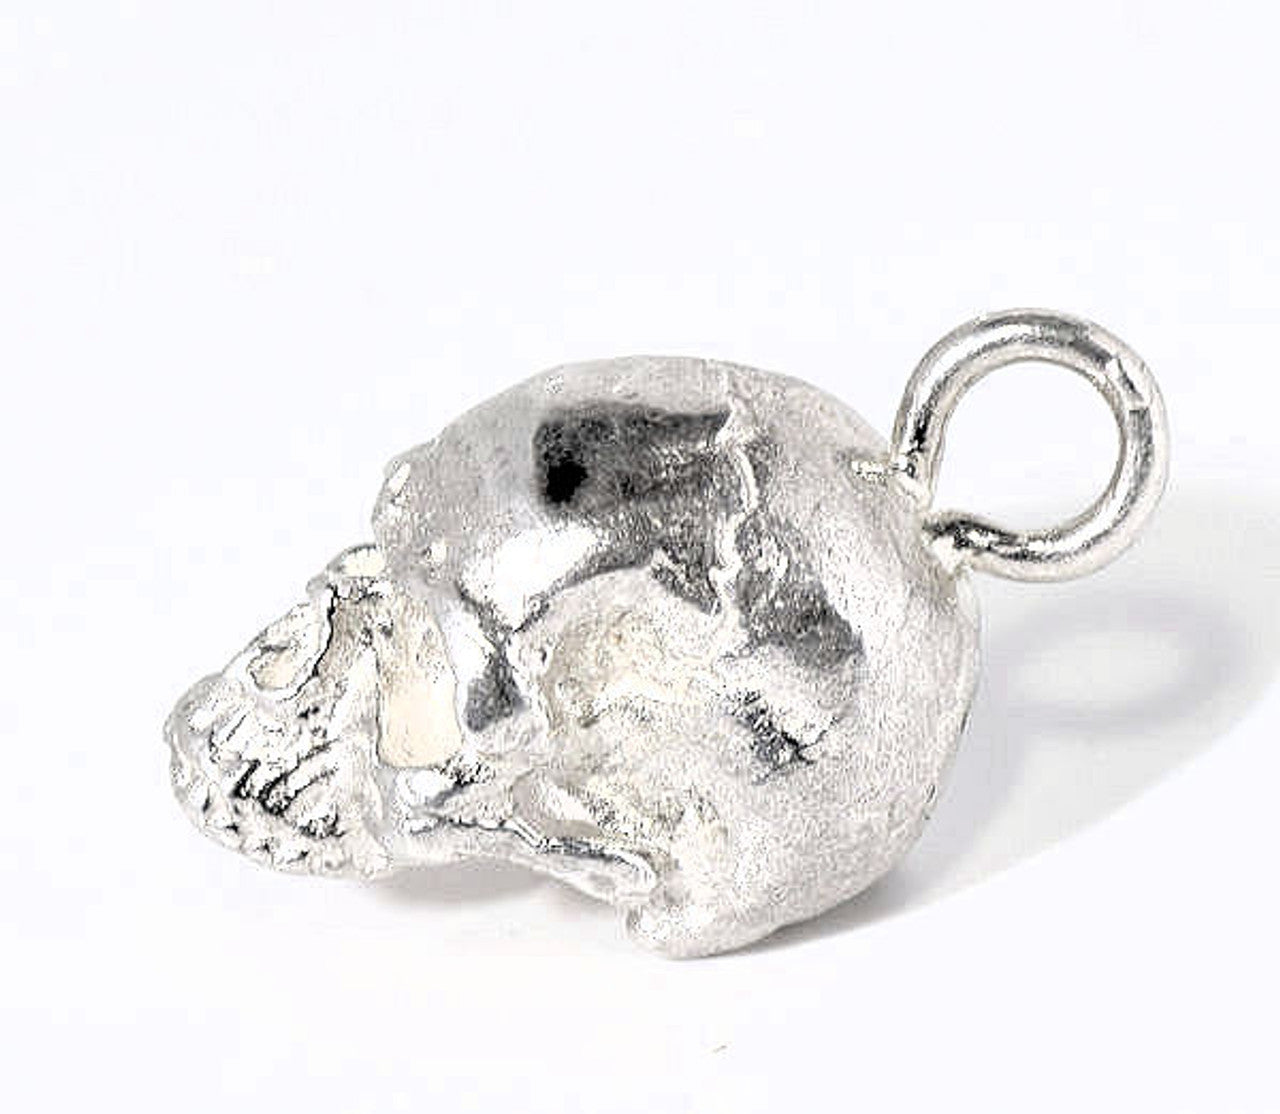 Sterling Silver Skull Pendant